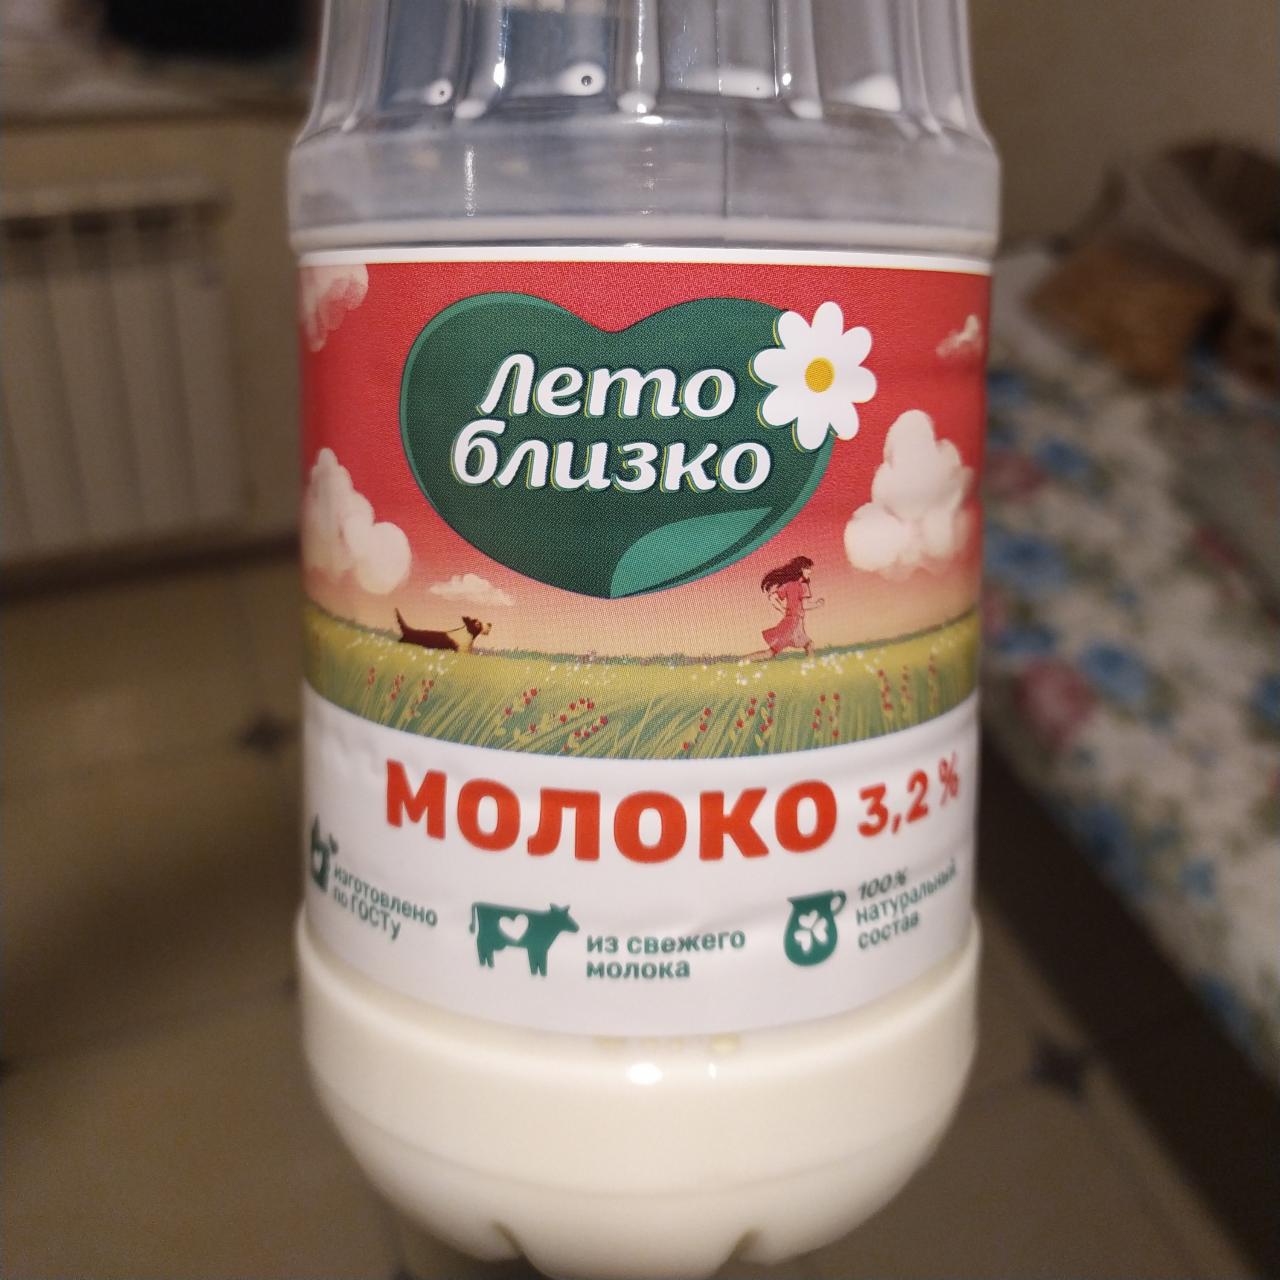 Фото - Молоко 3.2 % Лето близко